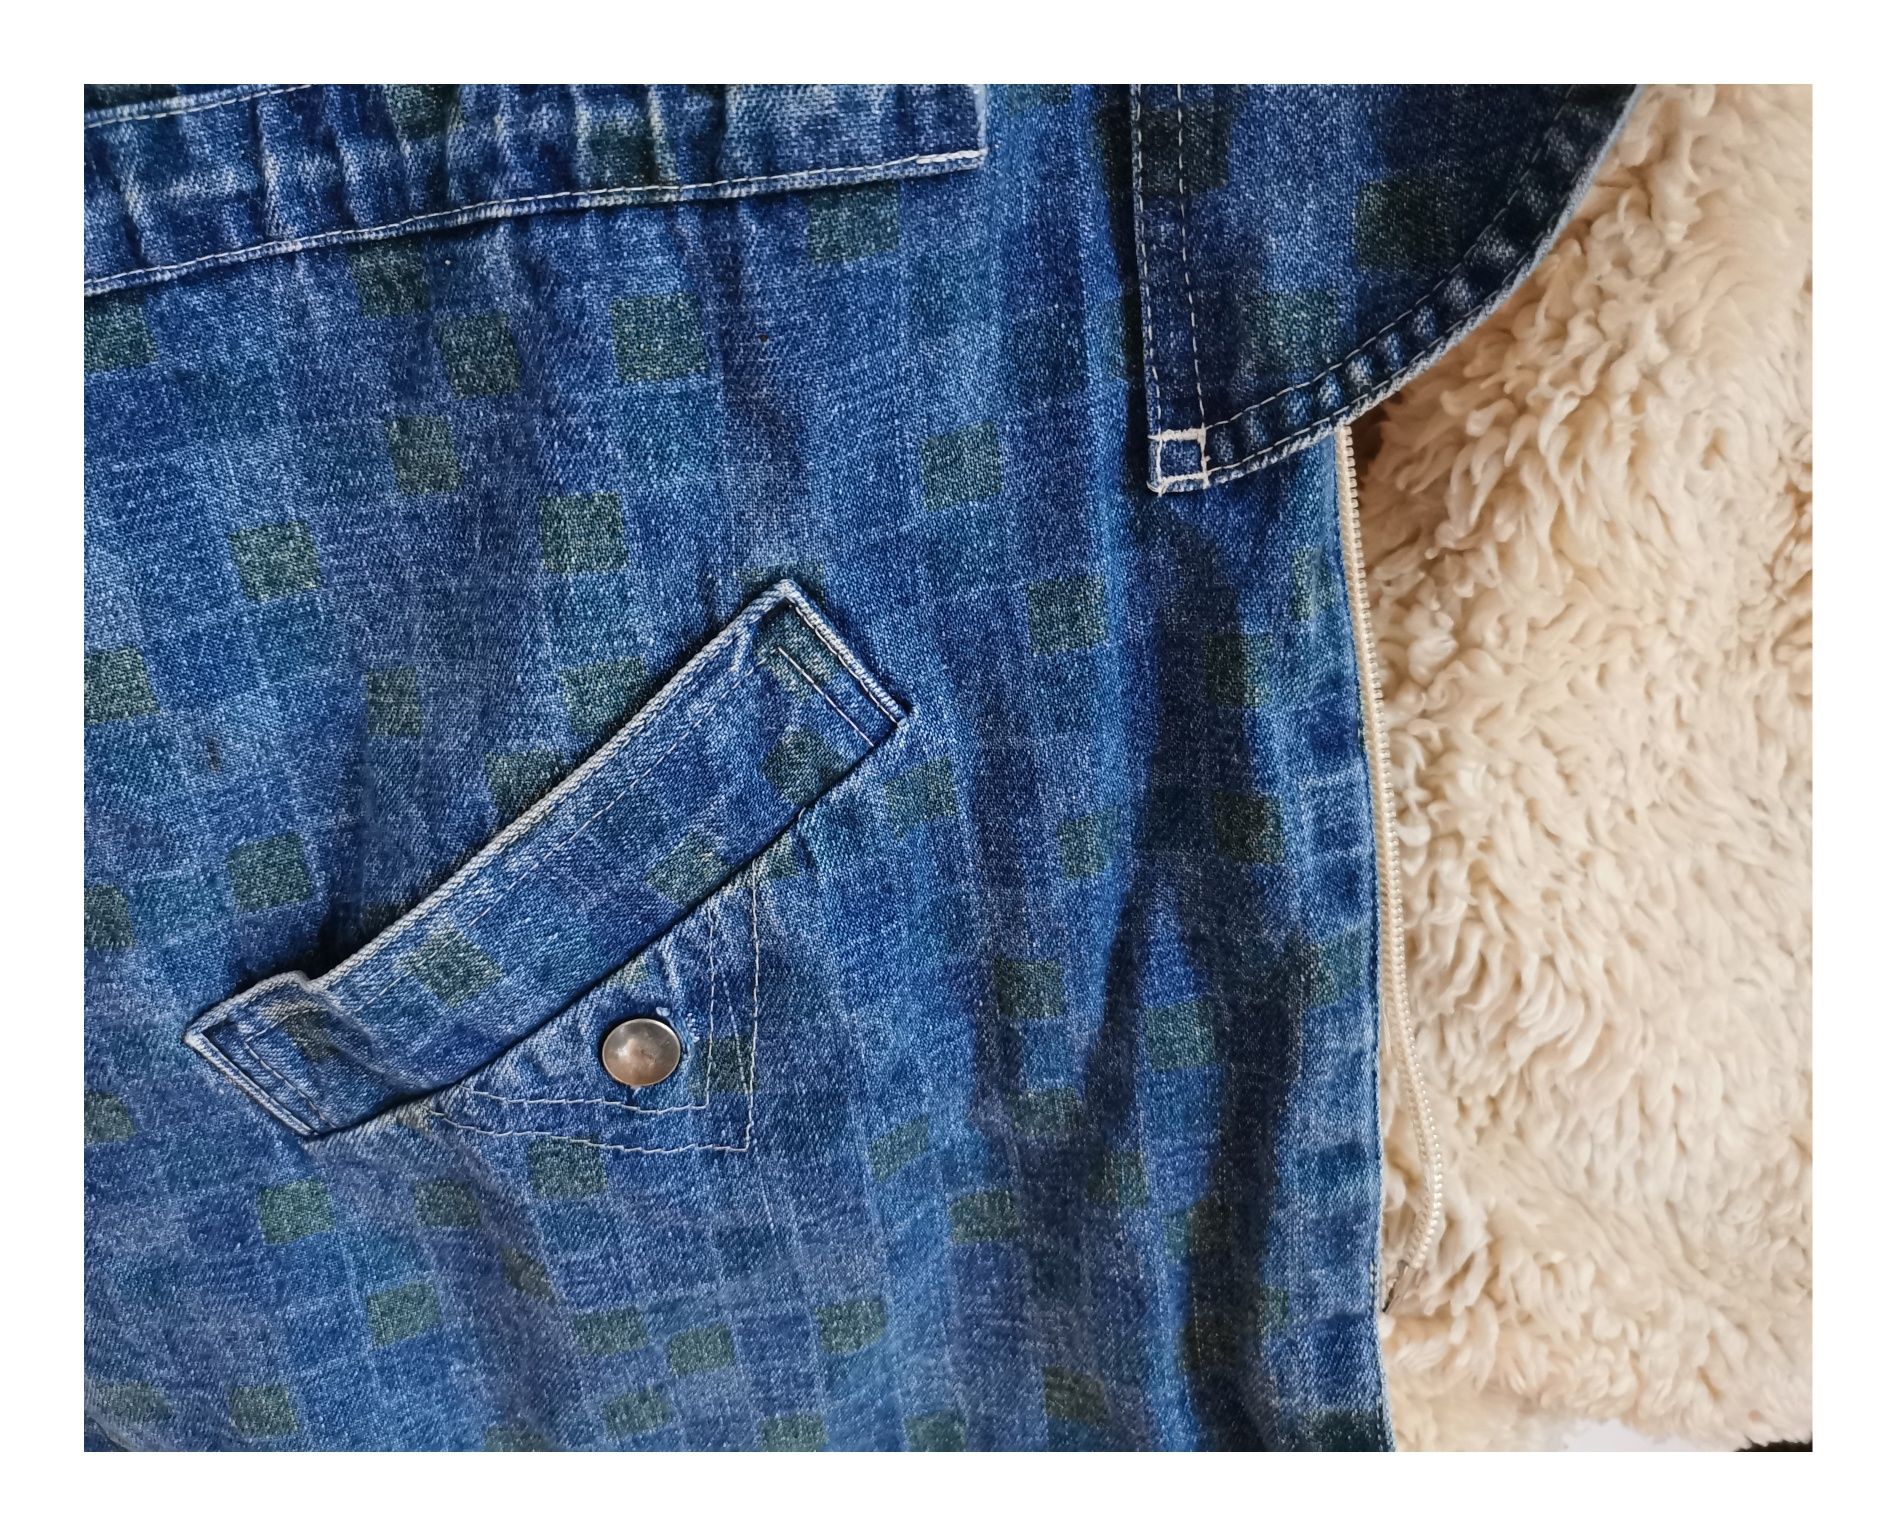 Kurtka jeansowa lata80/90 (XS/S) #topvintage #zmisiem